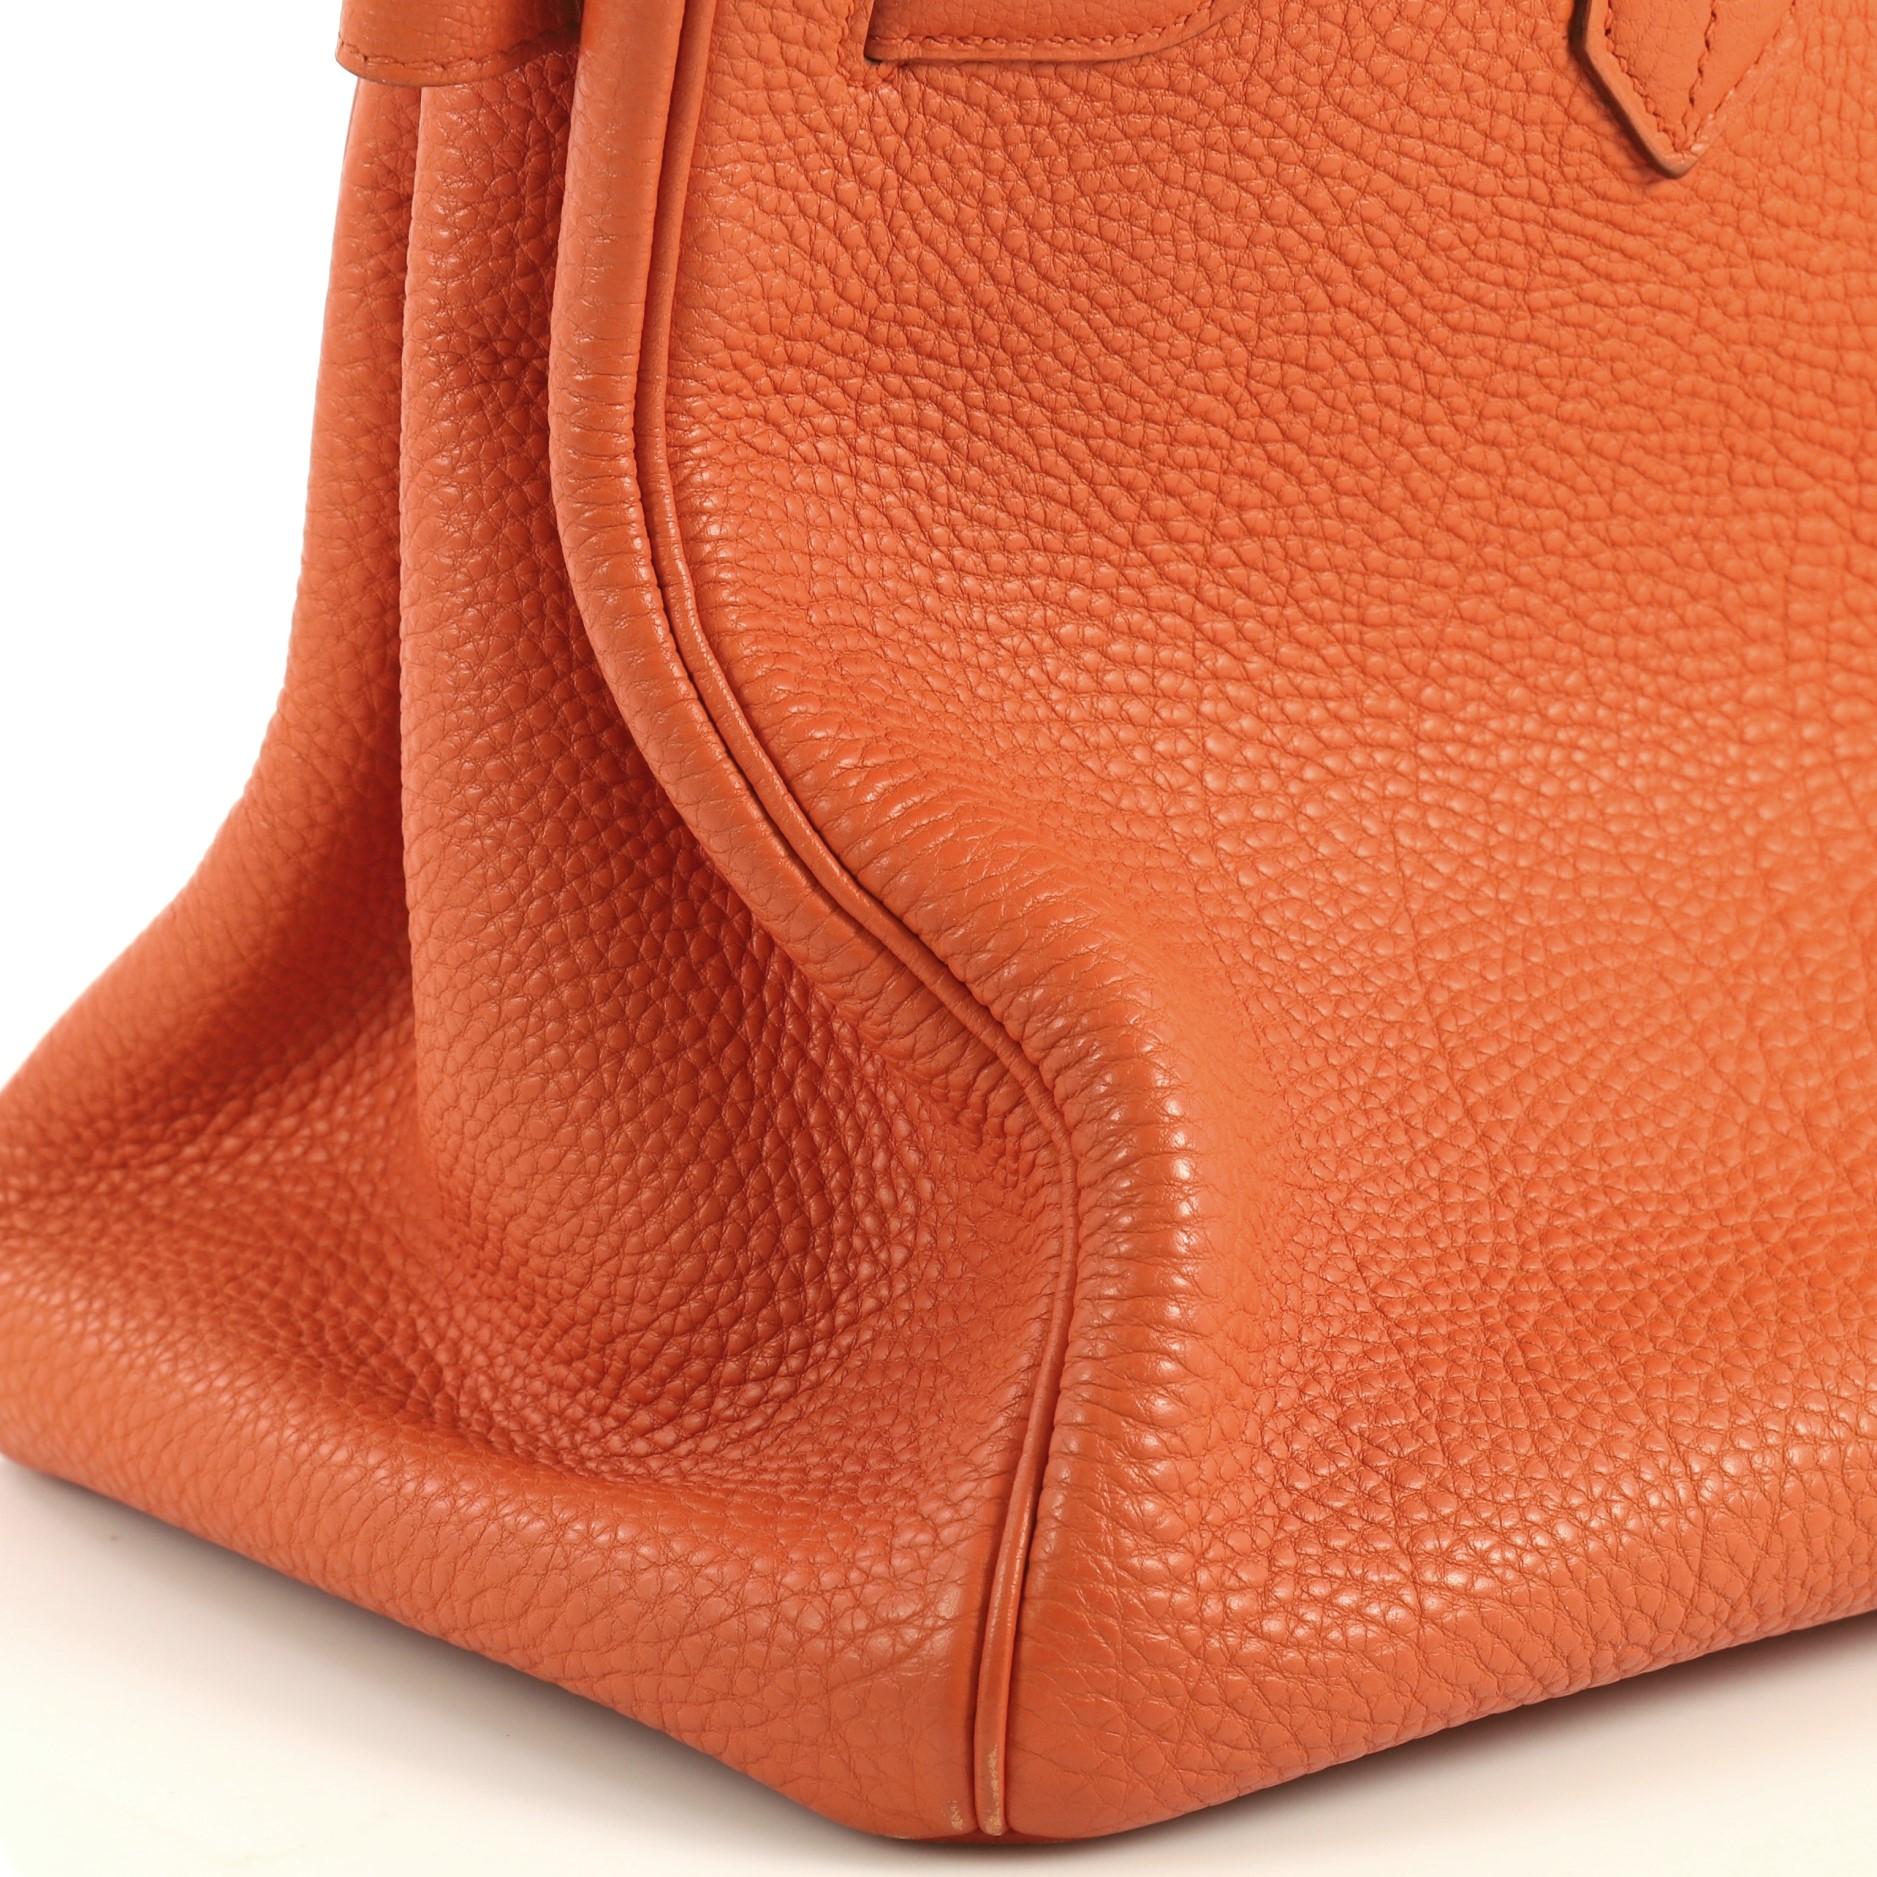 Hermes Birkin Handbag Orange H Togo with Palladium Hardware 35 4